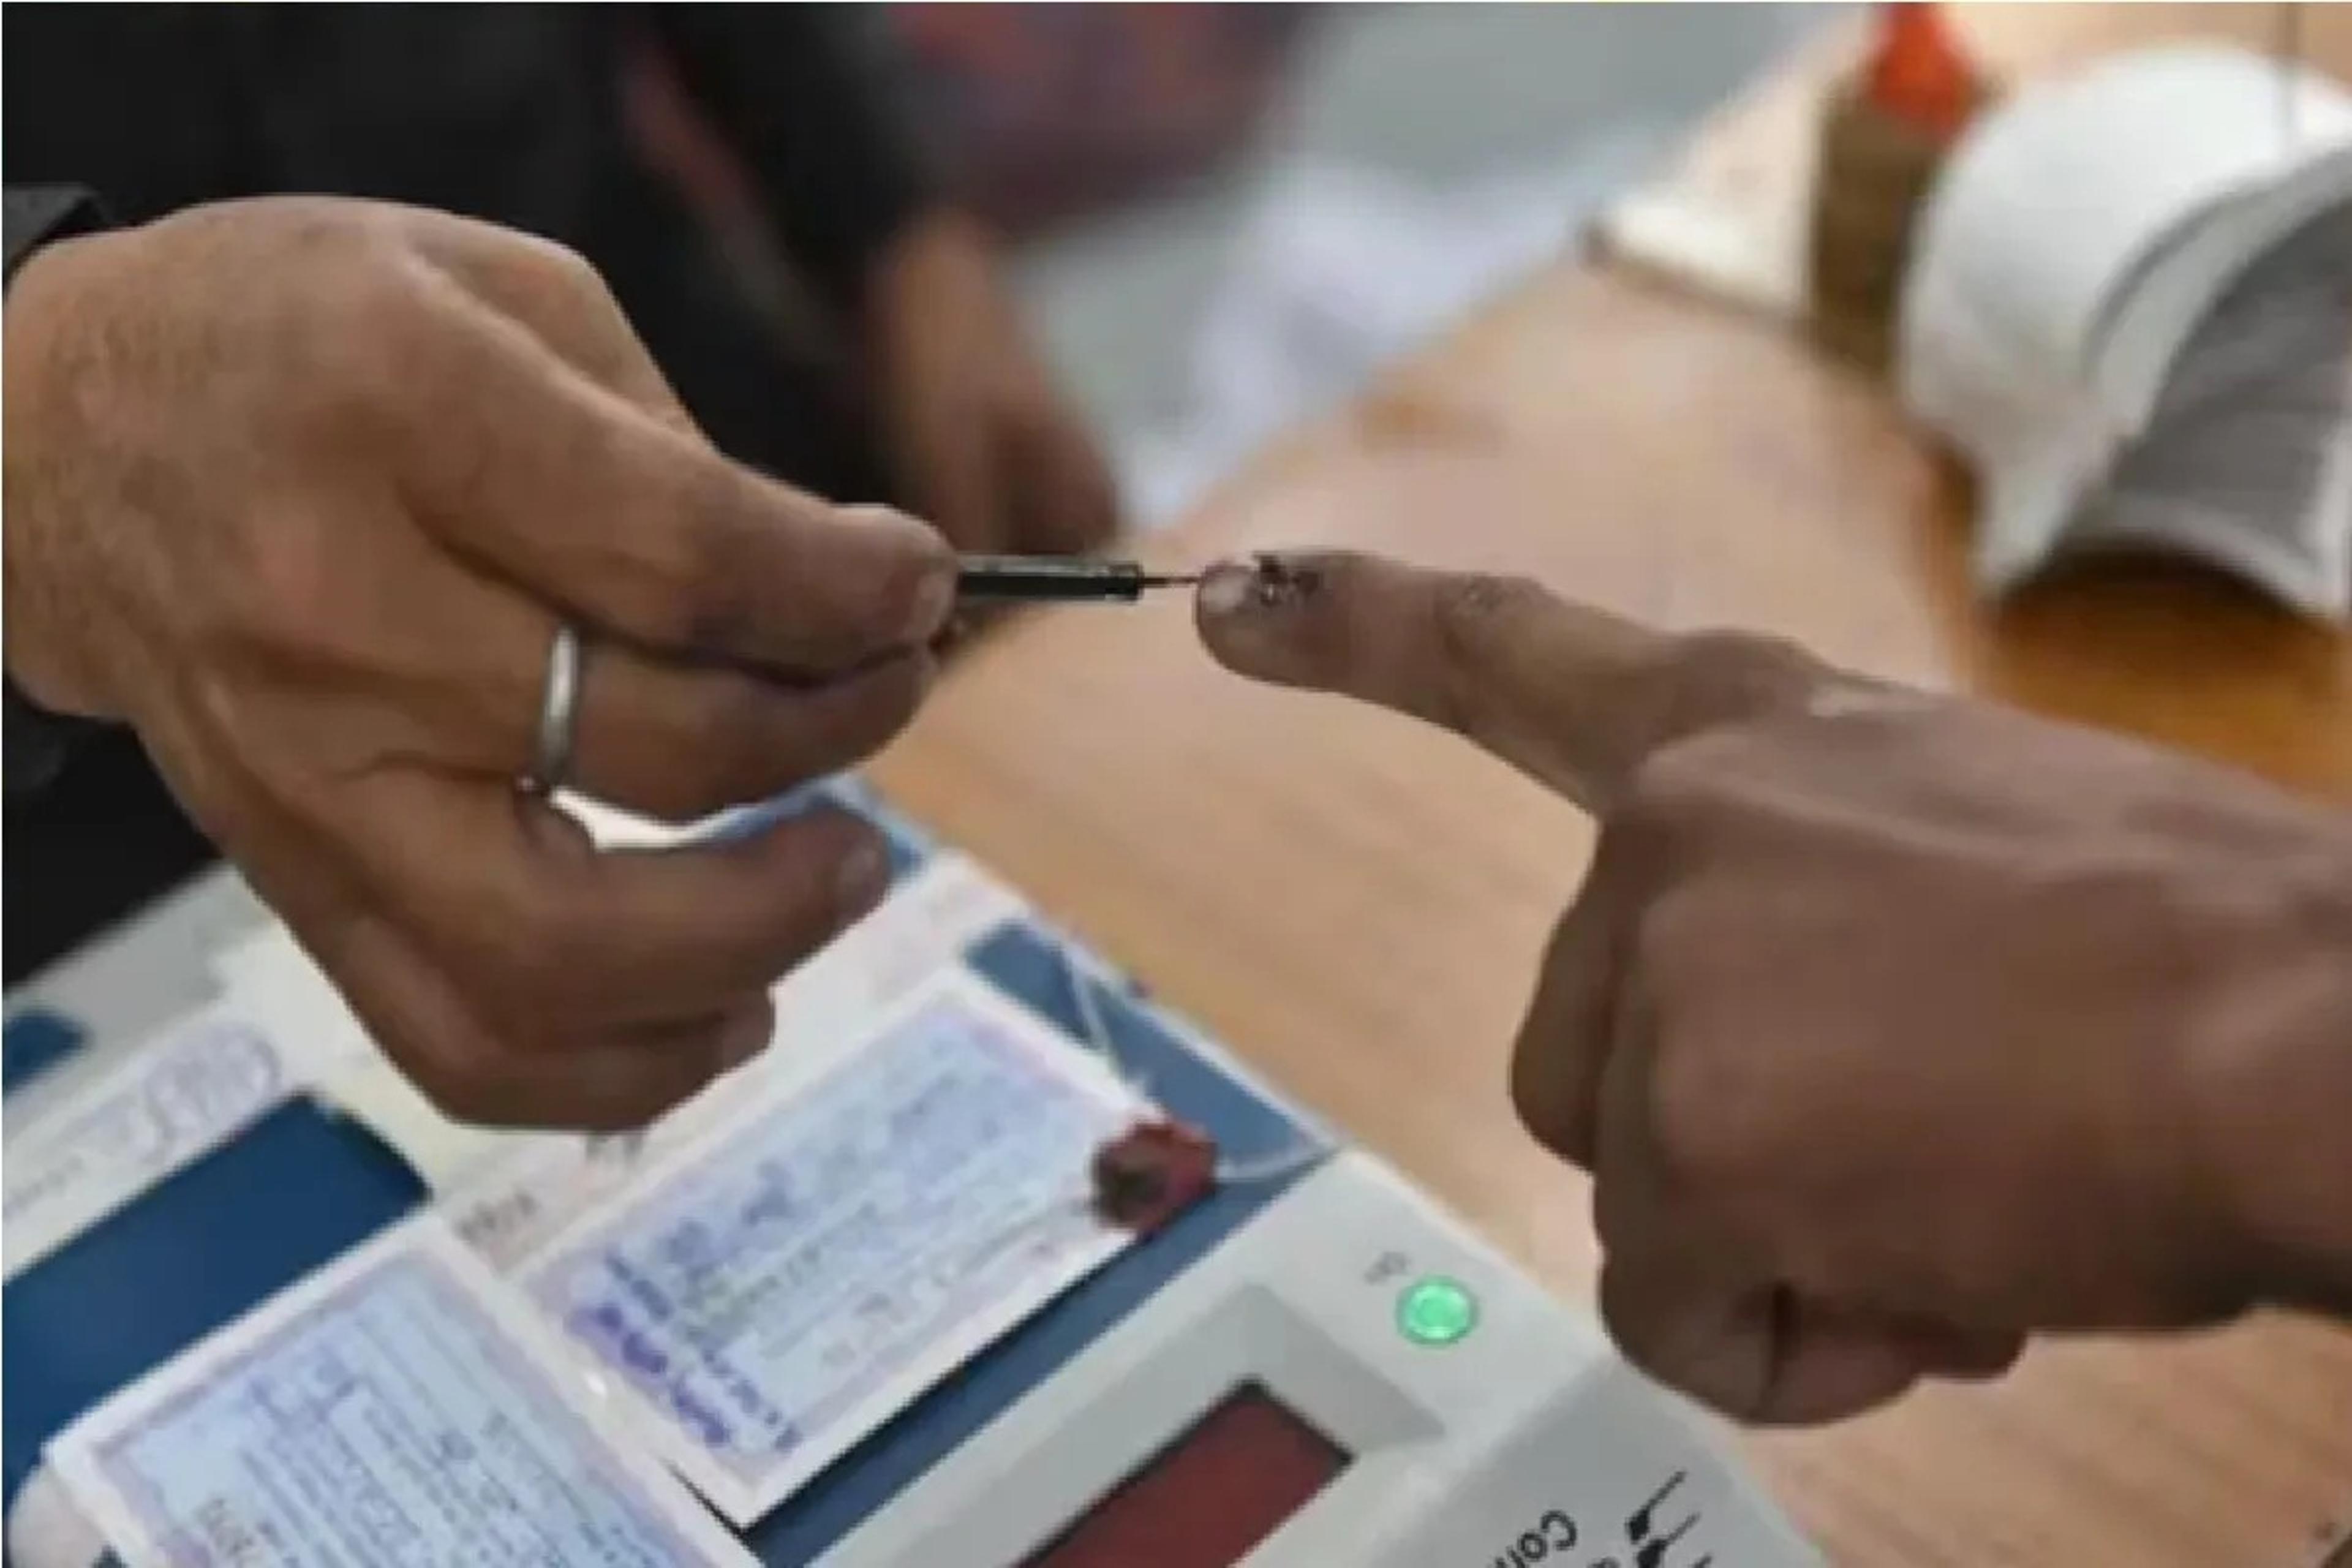 मतदान करने लोगों को घर तक लेने आएगी गाड़ी, चुनाव आयोग अलर्ट, 26 अप्रैल को होगी
वोटिंग